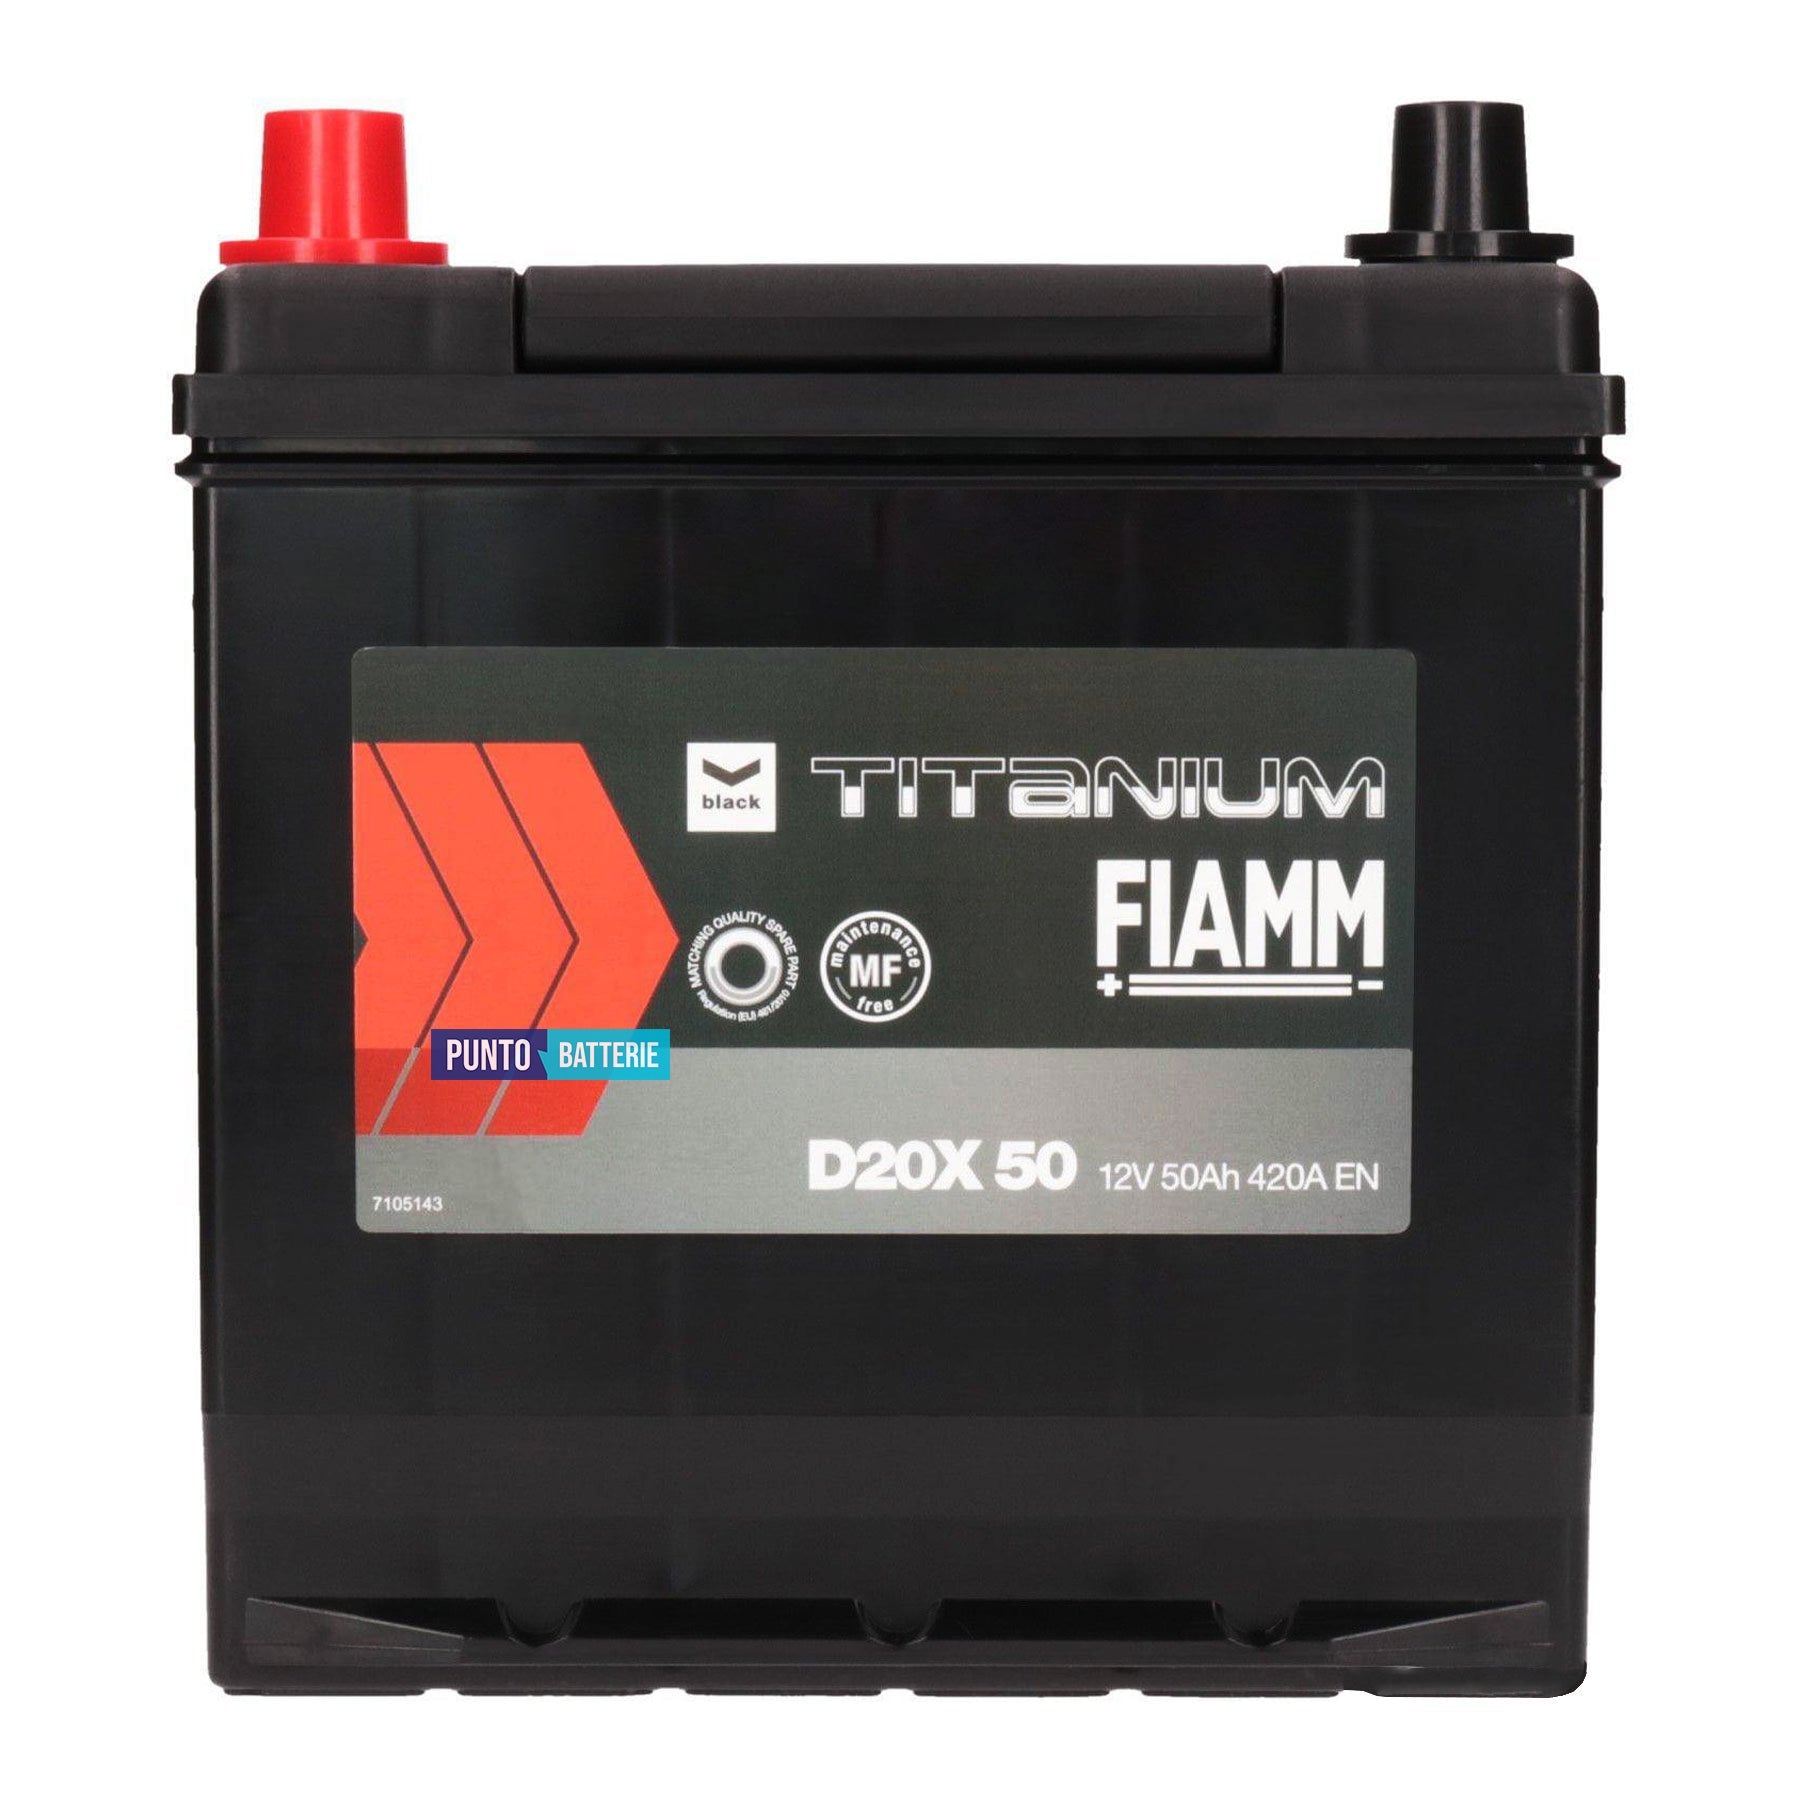 Batteria Fiamm 50Ah, 12V, 420A, 200x170x223mm